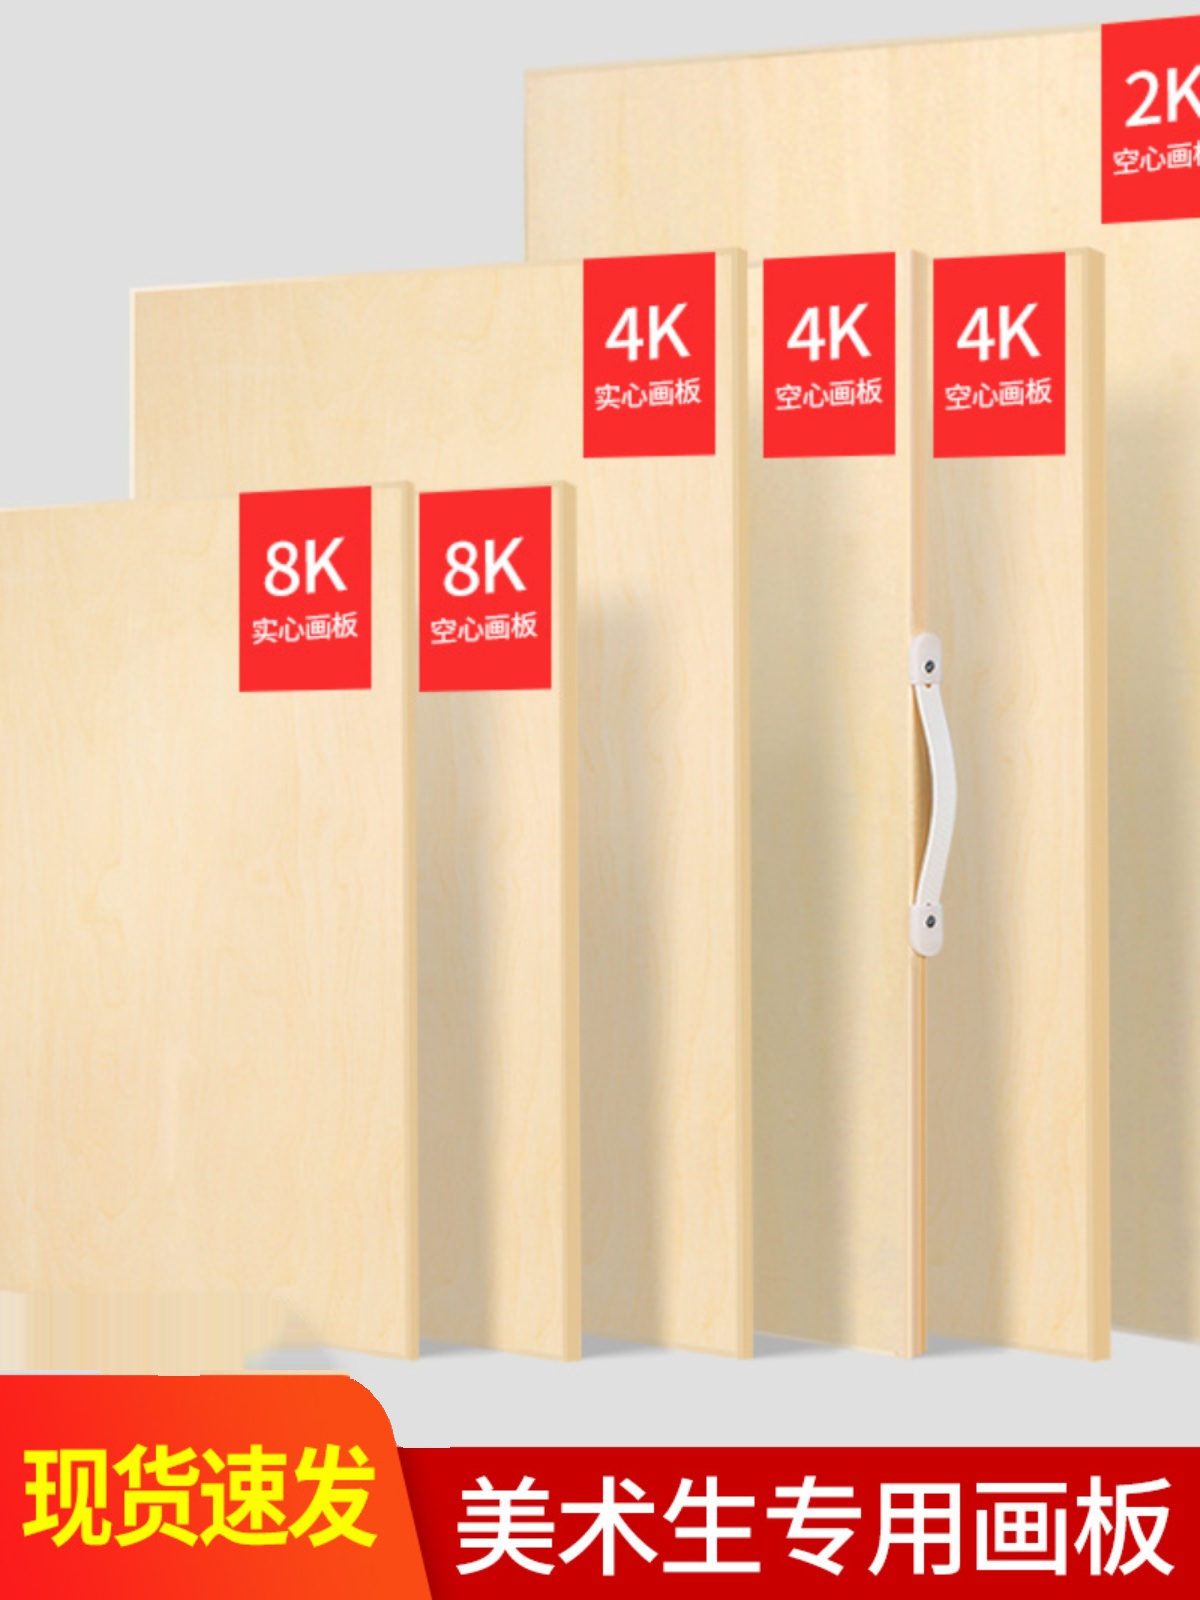 画室推荐美术生专用便携式画板4K8K2K素描空心实心绘画板实木画架